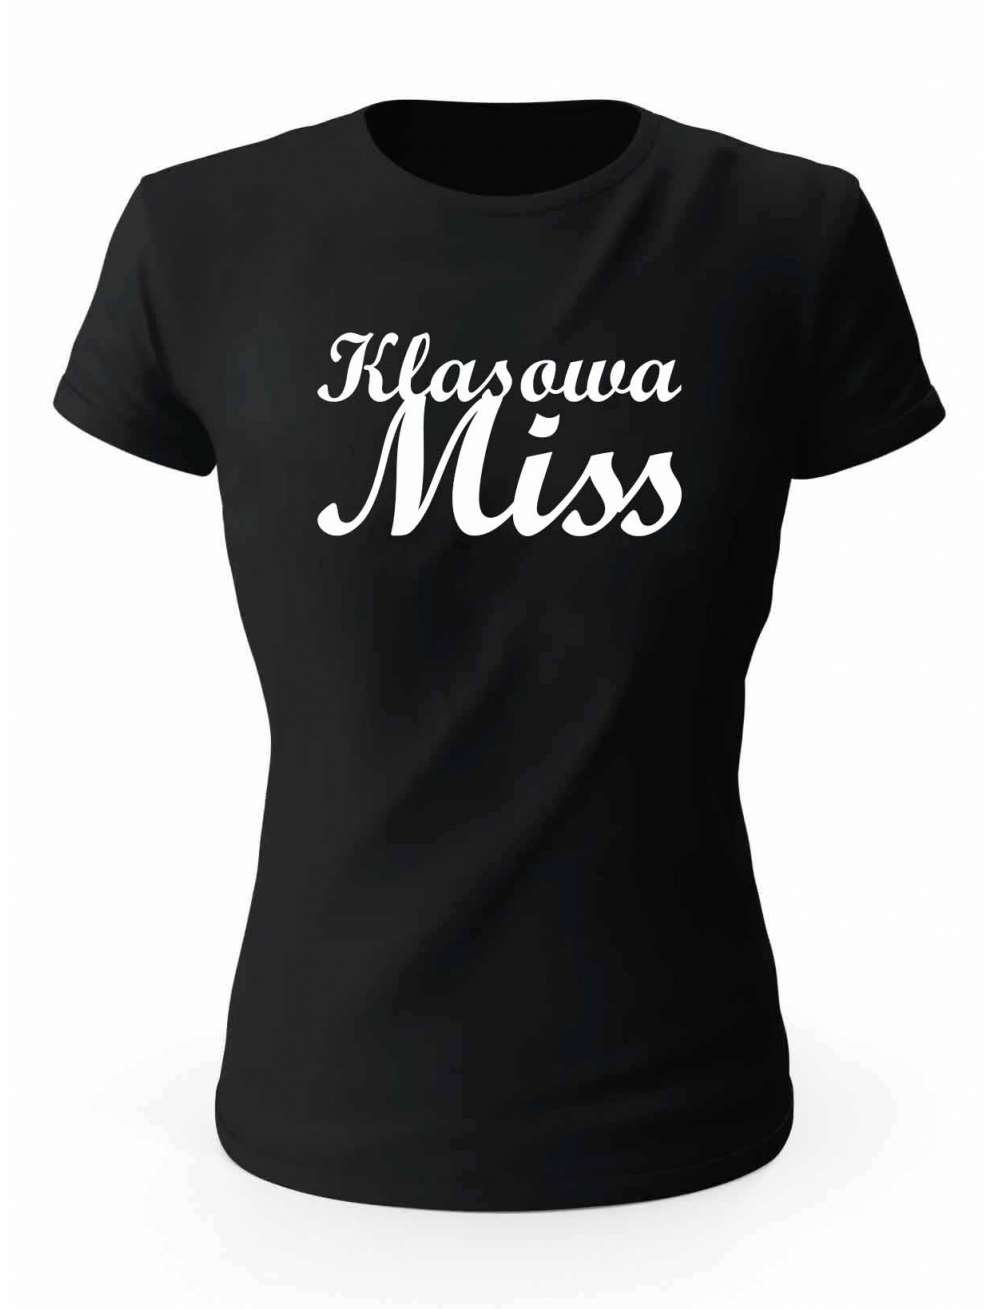 Koszulka Klasowa Miss, T-Shirt Damski, Prezent